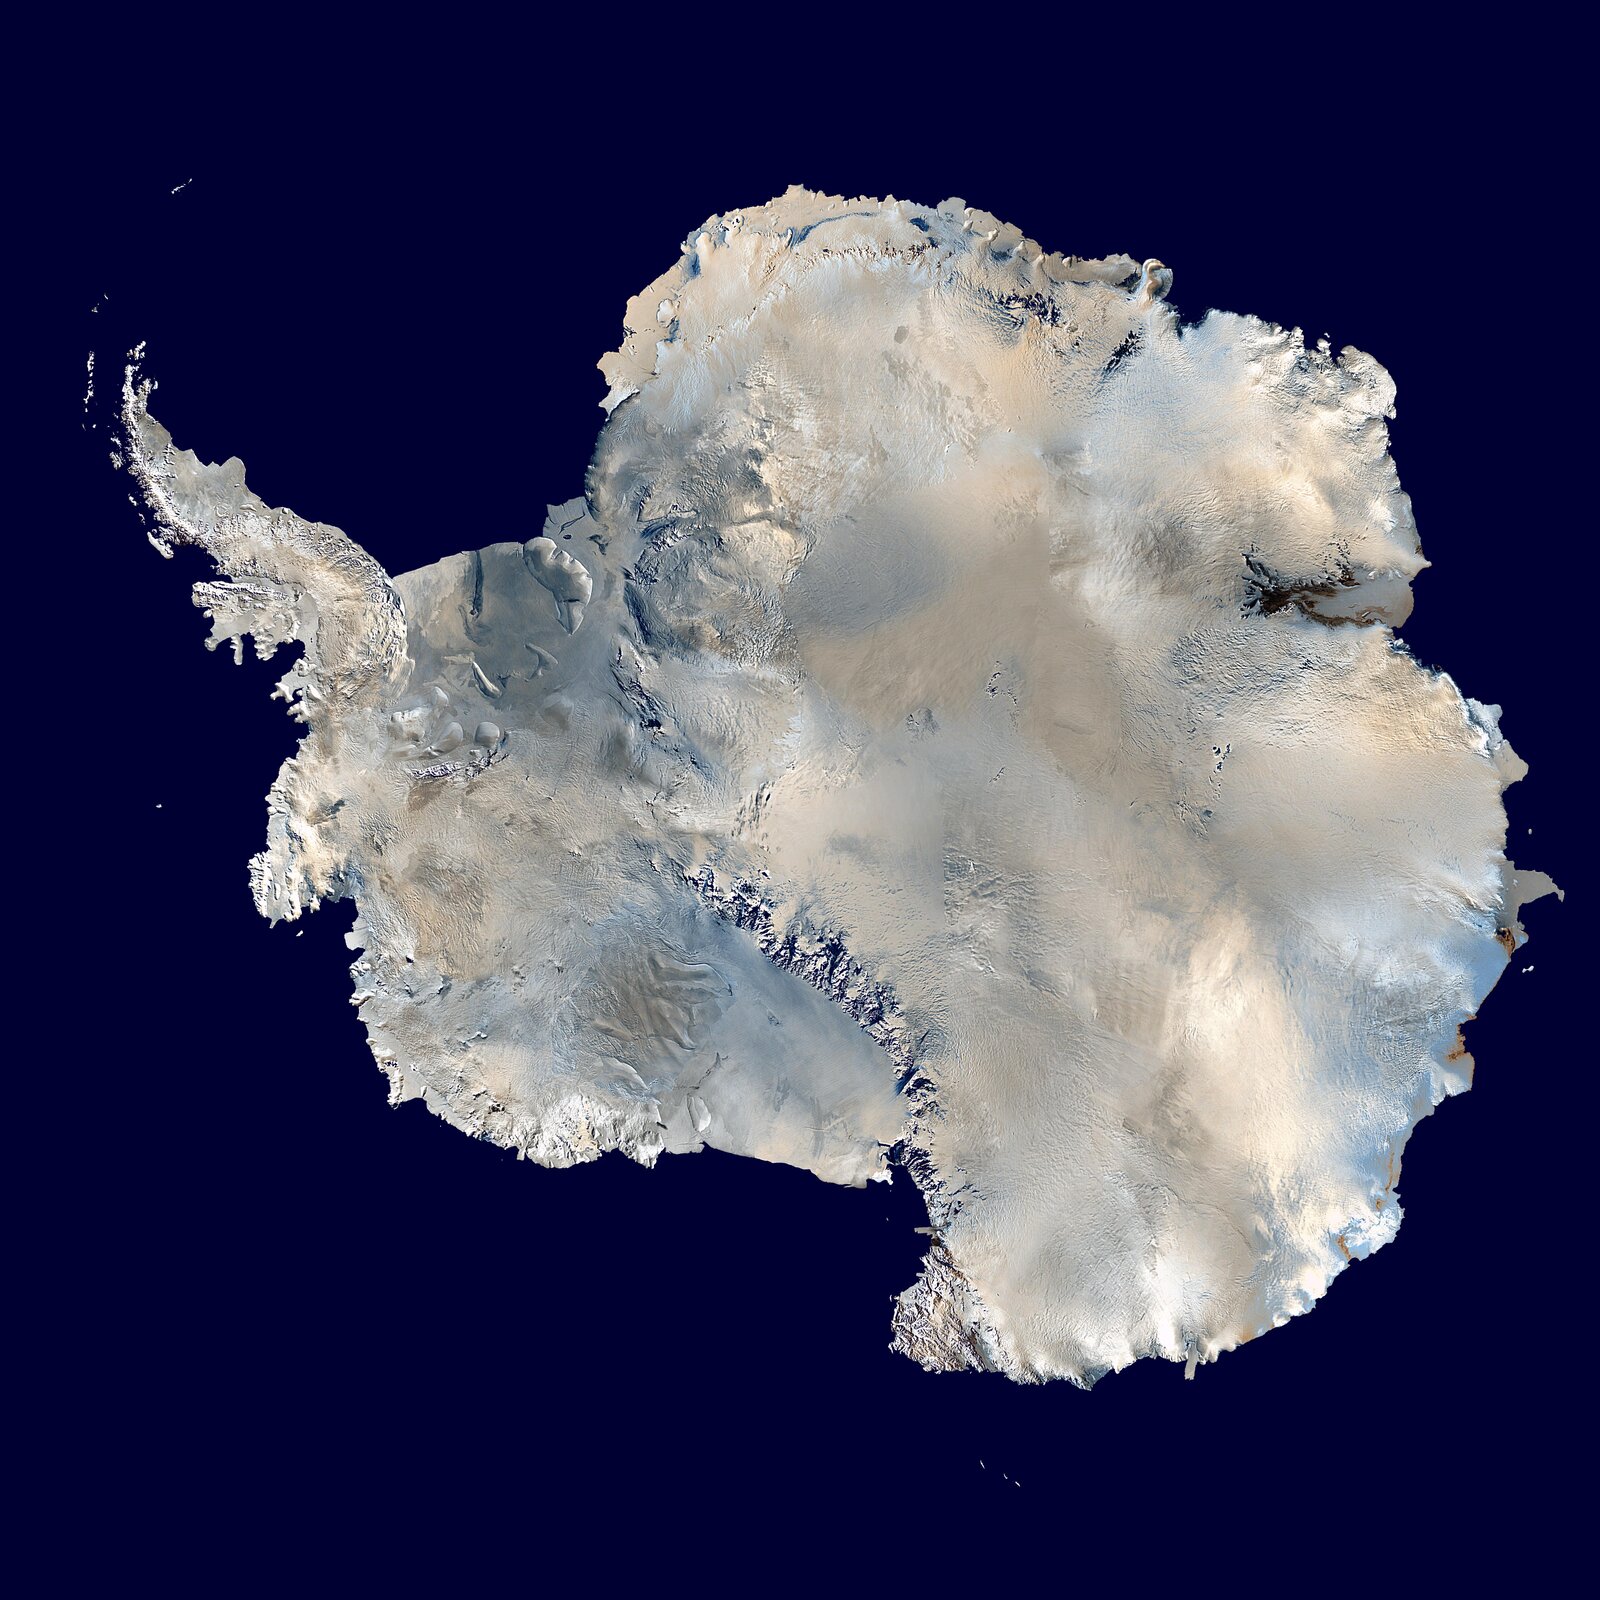 Widoczne jest zdjęcie satelitarne lądolodu antarktycznego. Jest on zbudowany z lodu, dlatego ma kolor biały. Przedstawiono go jako plamę o nieregularnym kształcie. Otacza ją powierzchnia oceanu. Jest ona w kolorze ciemnoniebieskim. Na lądolodzie widoczne są liczne niewielkie plamy - to różne formy ukształtowania powierzchni na lądolodzie.